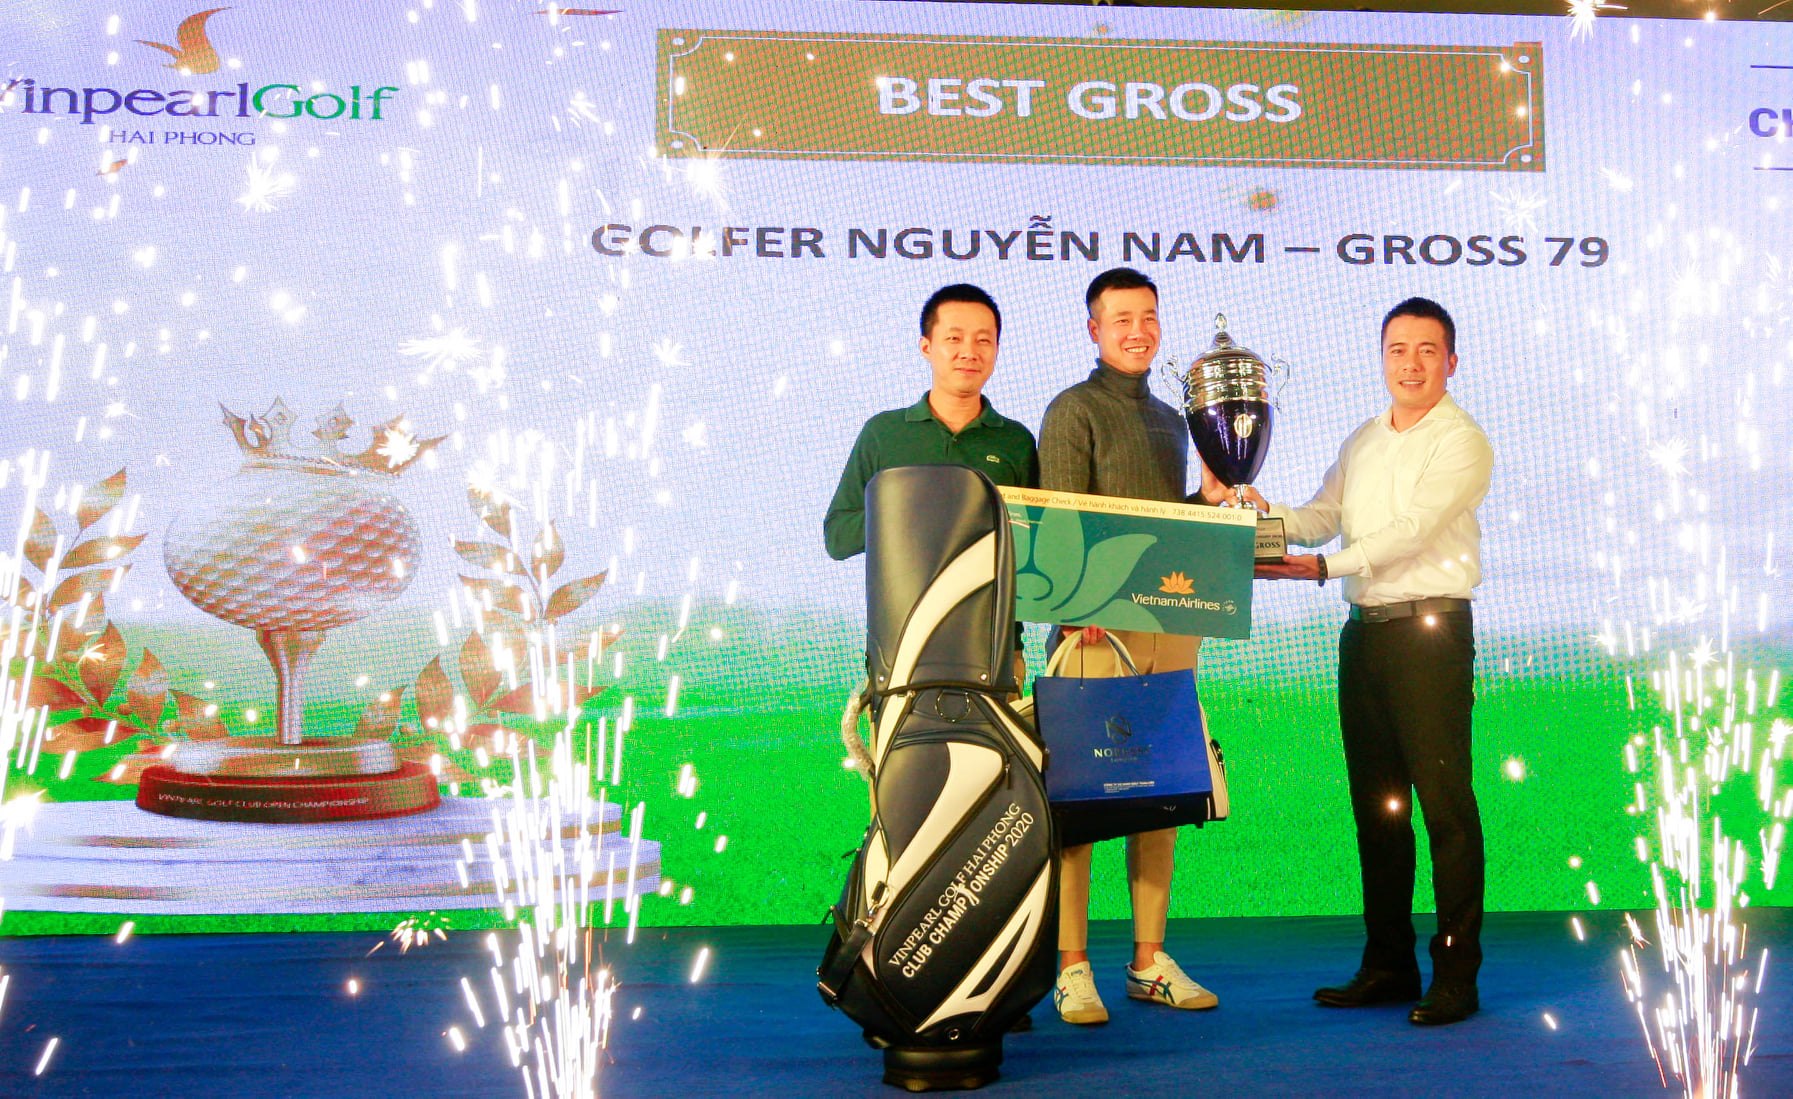 Golfer Nguyễn Nam vô địch Vinpearl Golf Hải Phòng Championship 2020.